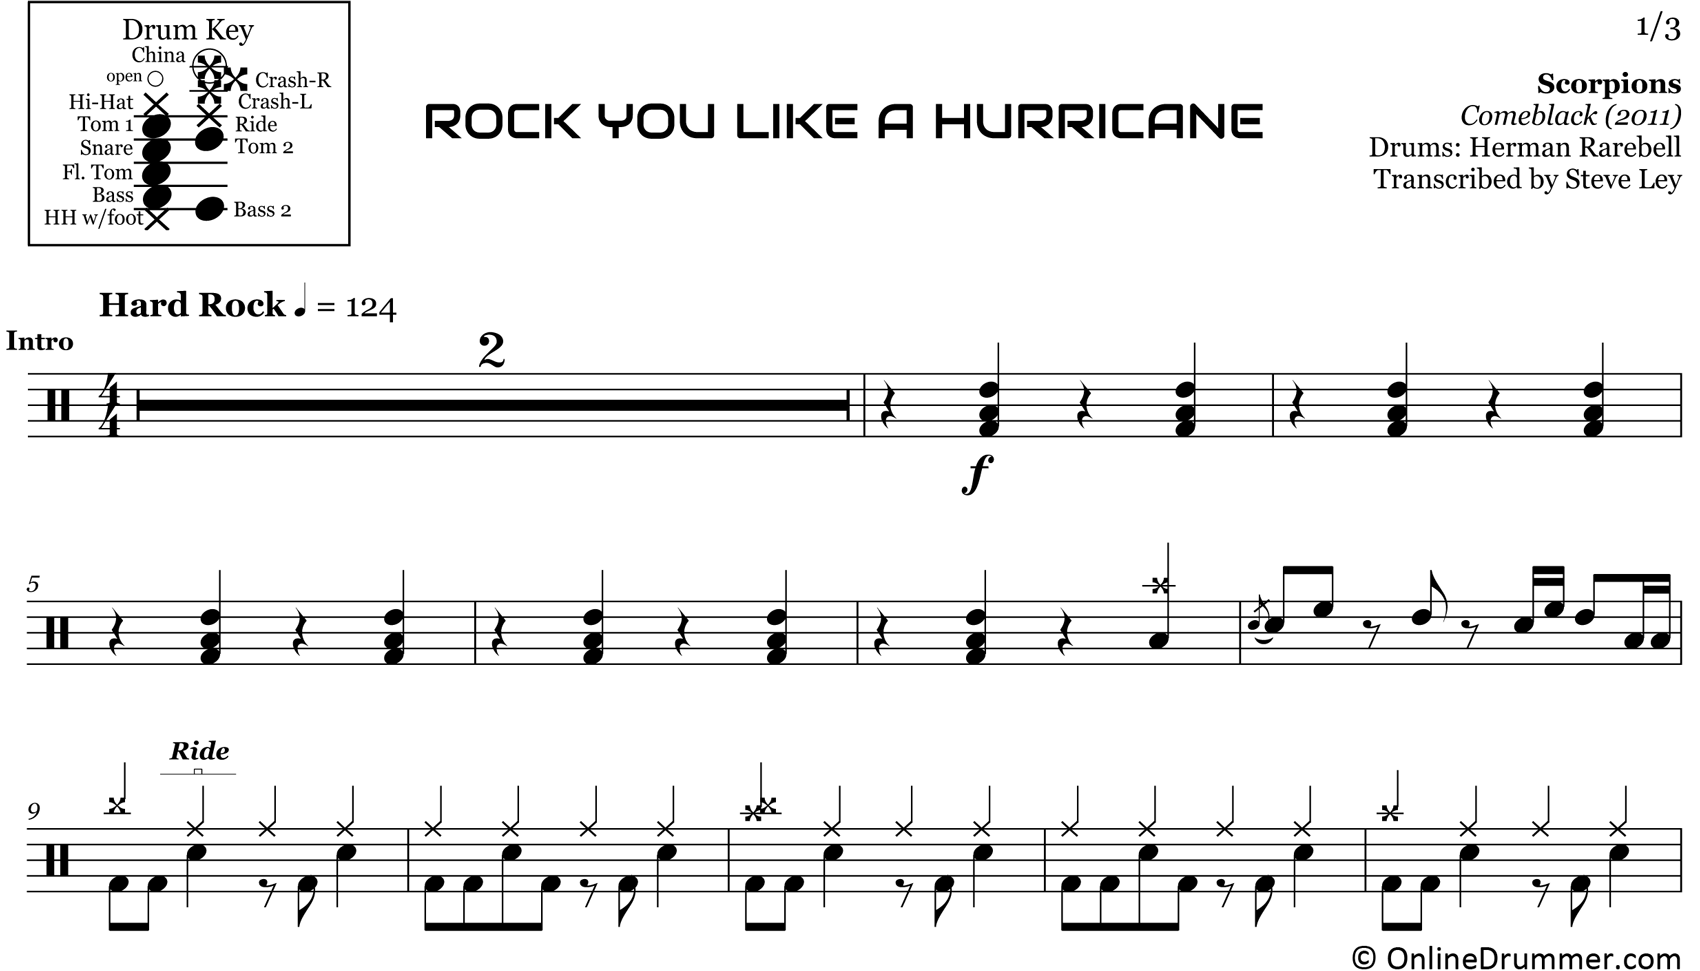 Rock You Like a Hurricane - Scorpions - Drum Sheet Music